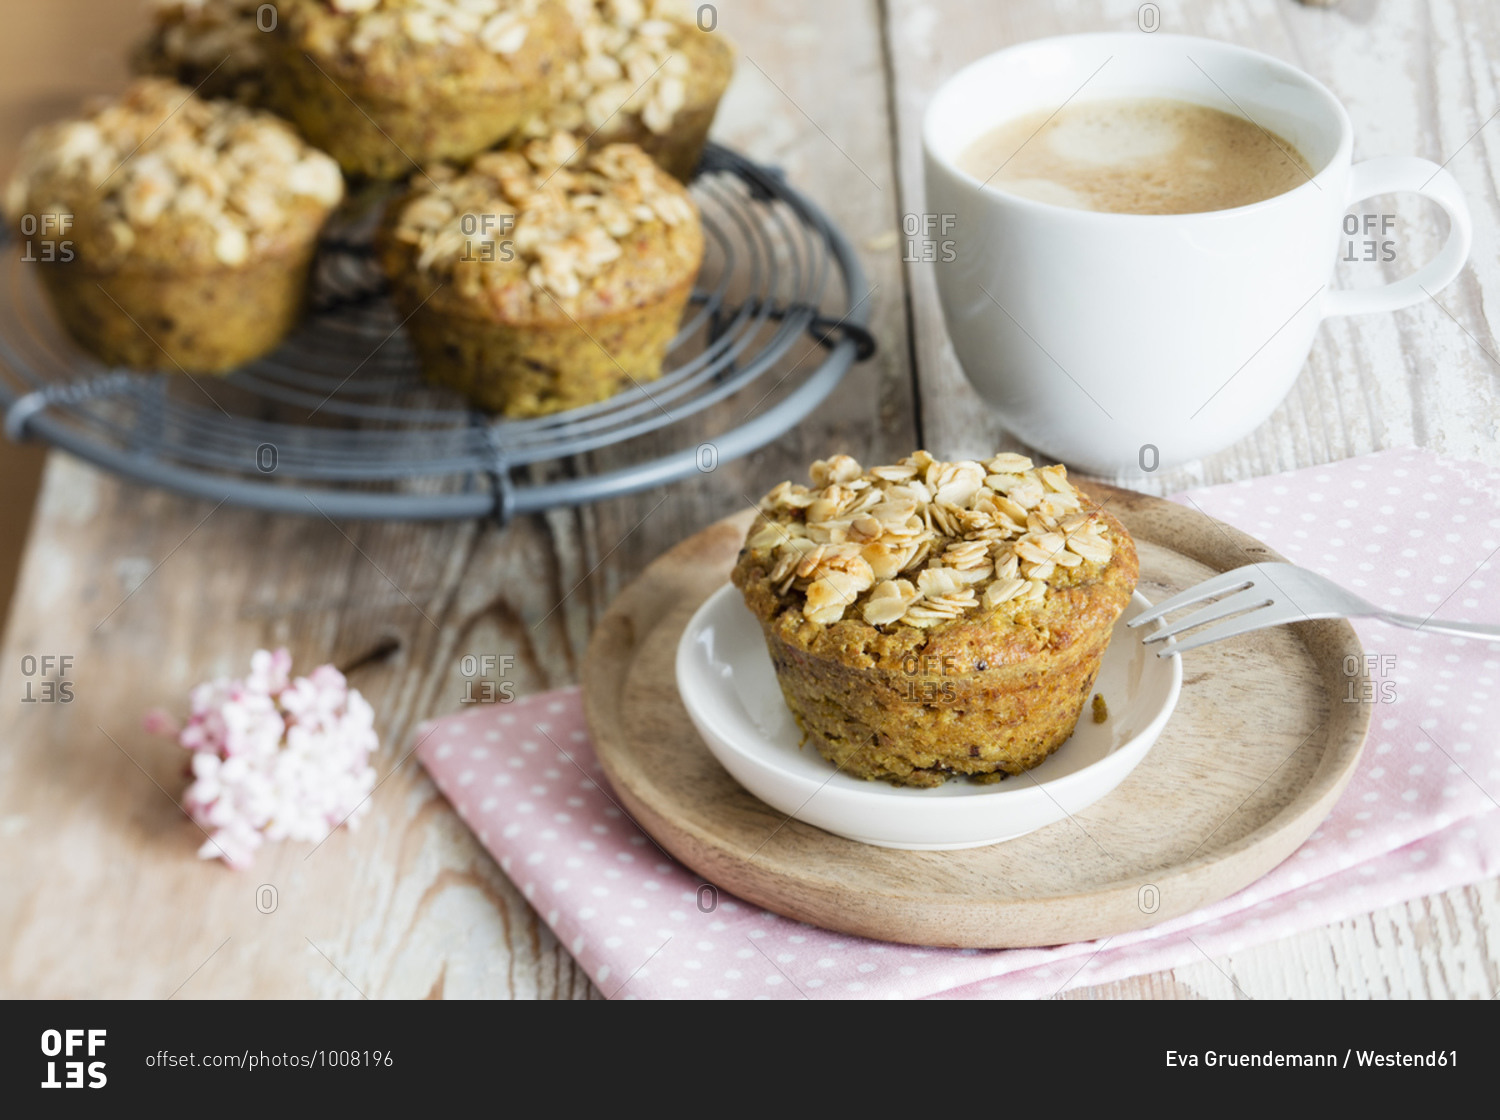 Breakfast muffins with berries- granola and turmeric- studio shot